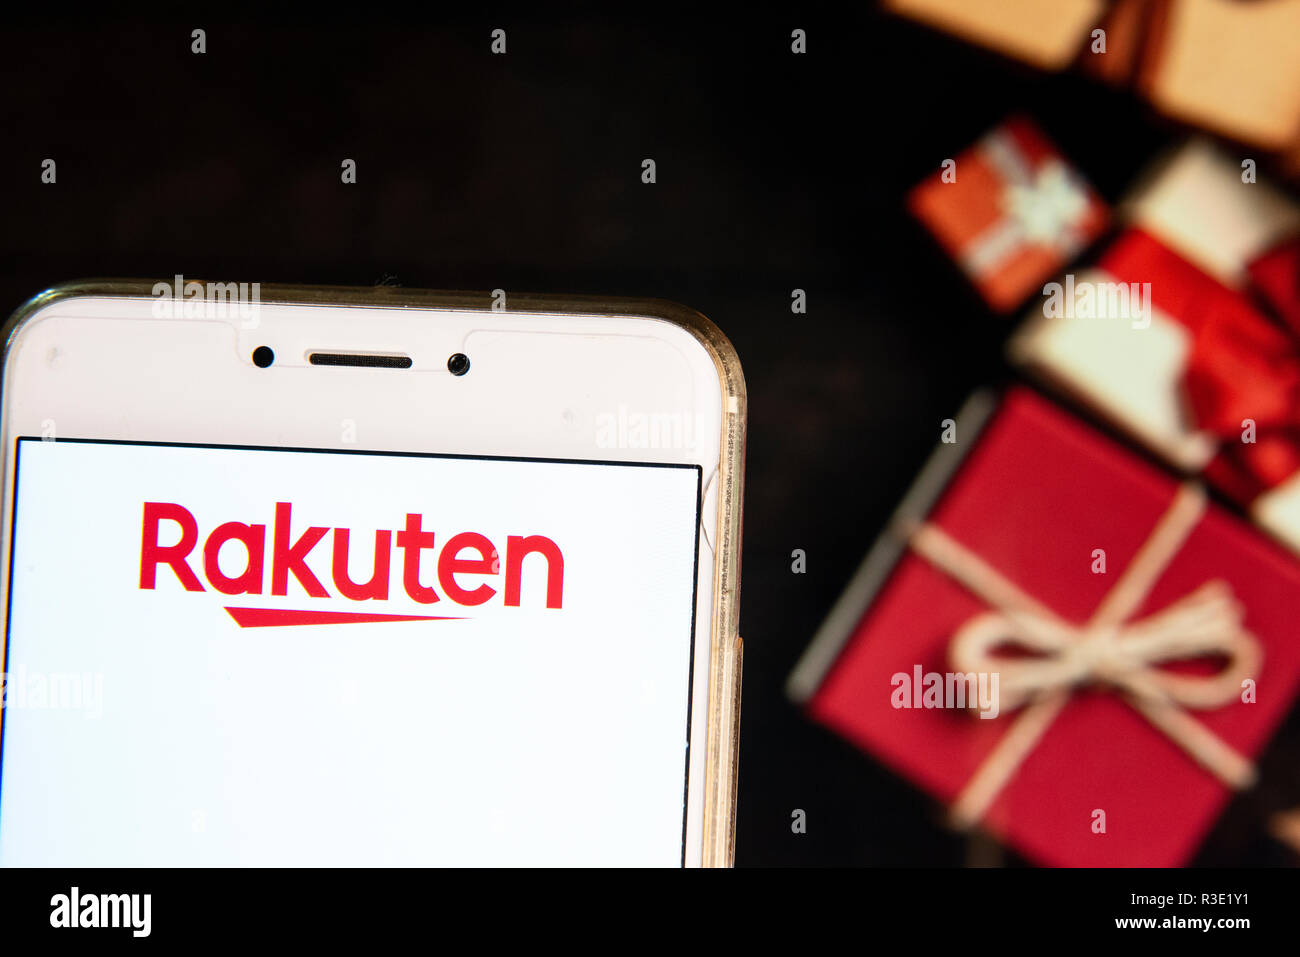 Giapponese del commercio elettronico e la società Internet Rakuten logo è visibile su un androide dispositivo mobile con un Natale regali avvolti in background. Foto Stock